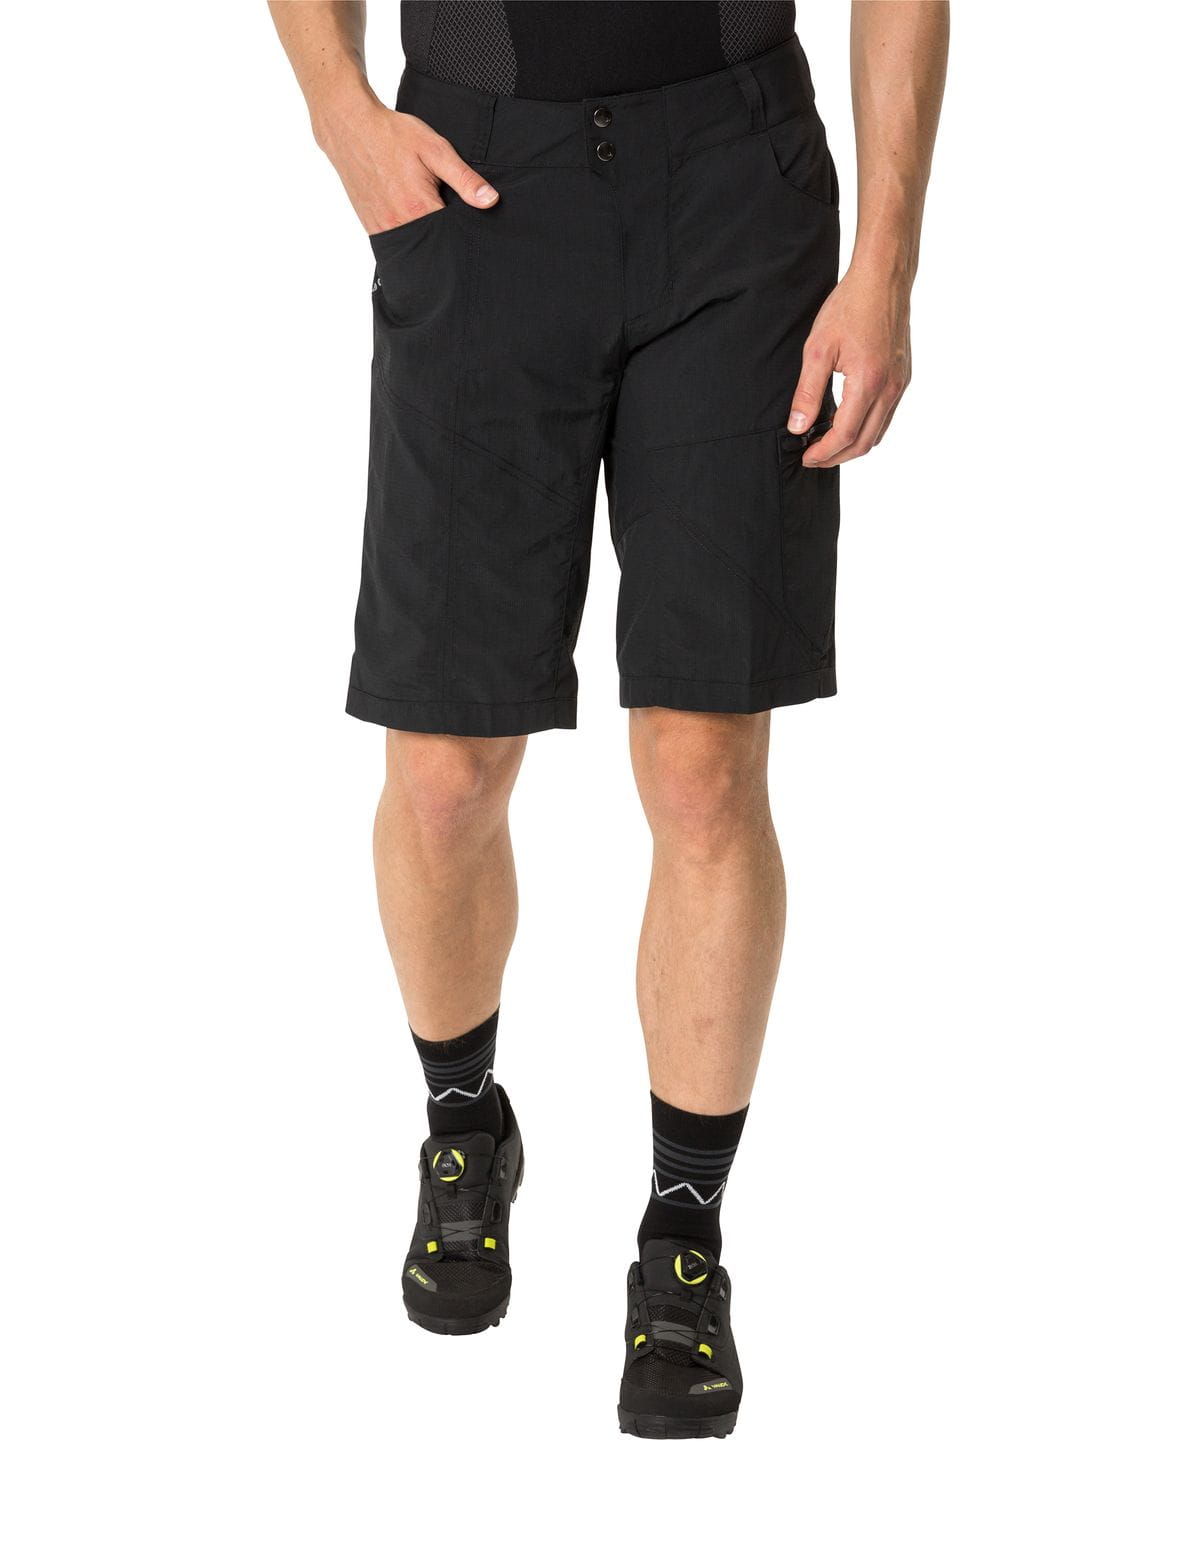 VAUDE Mens Tamaro Shorts Bike Shorts with herausnehmbarer Innenhose